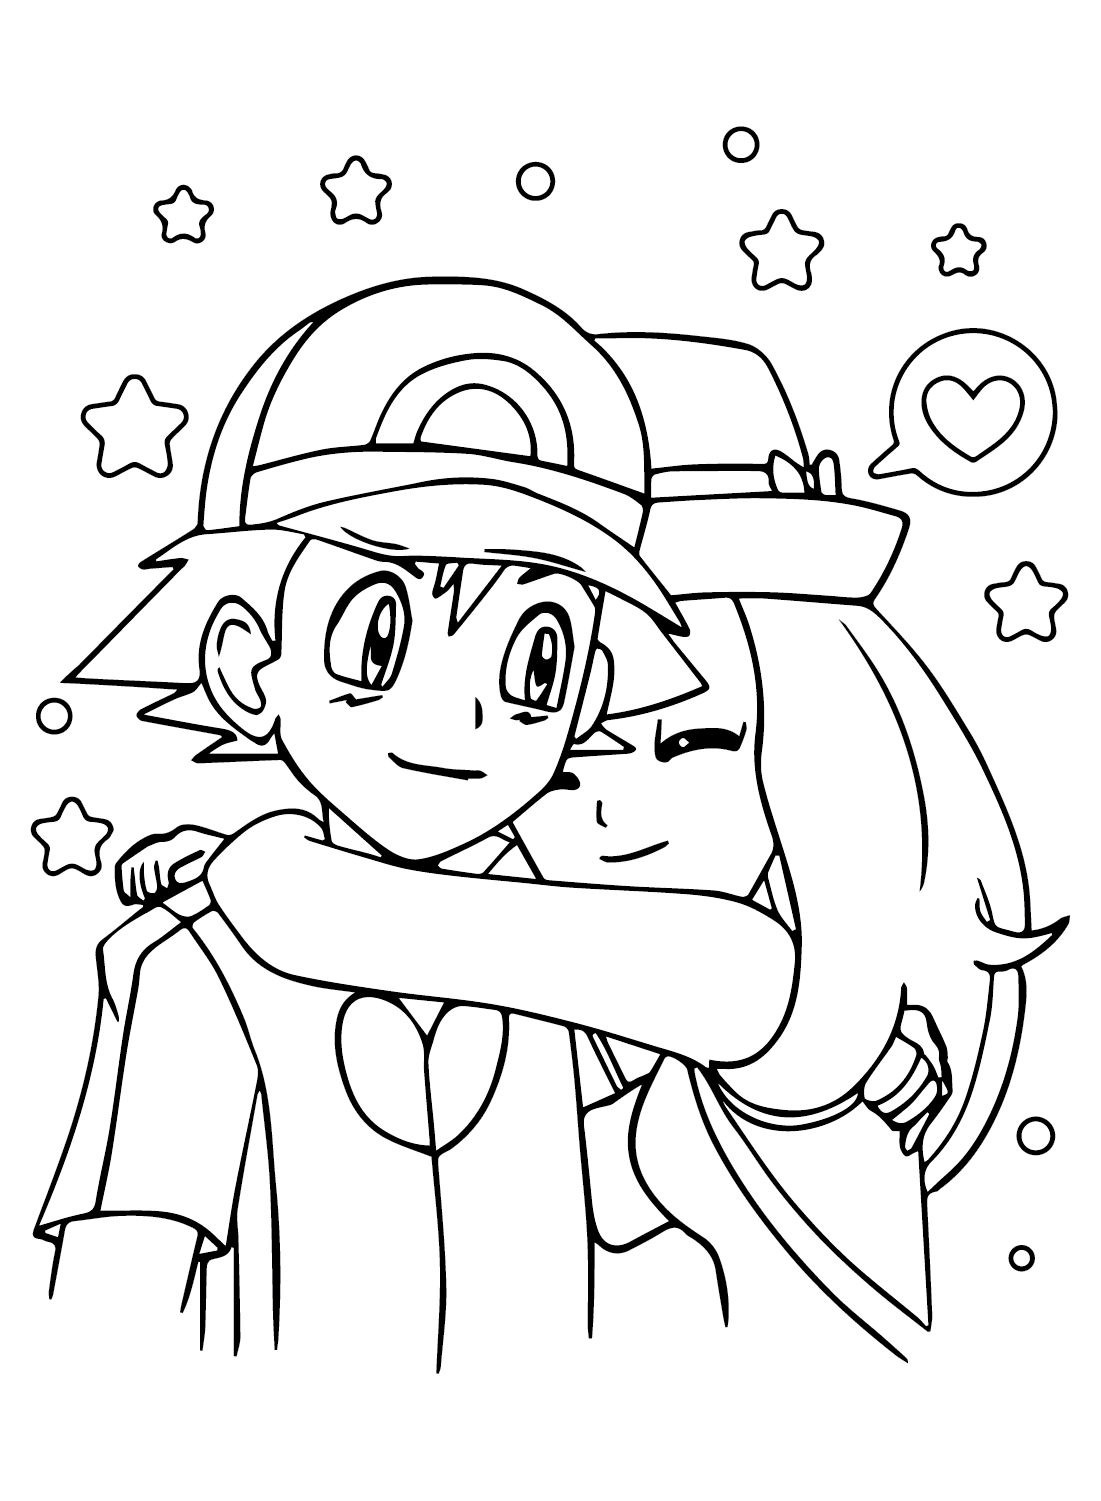 Ash and Serena Coloring Page from Ash Ketchum